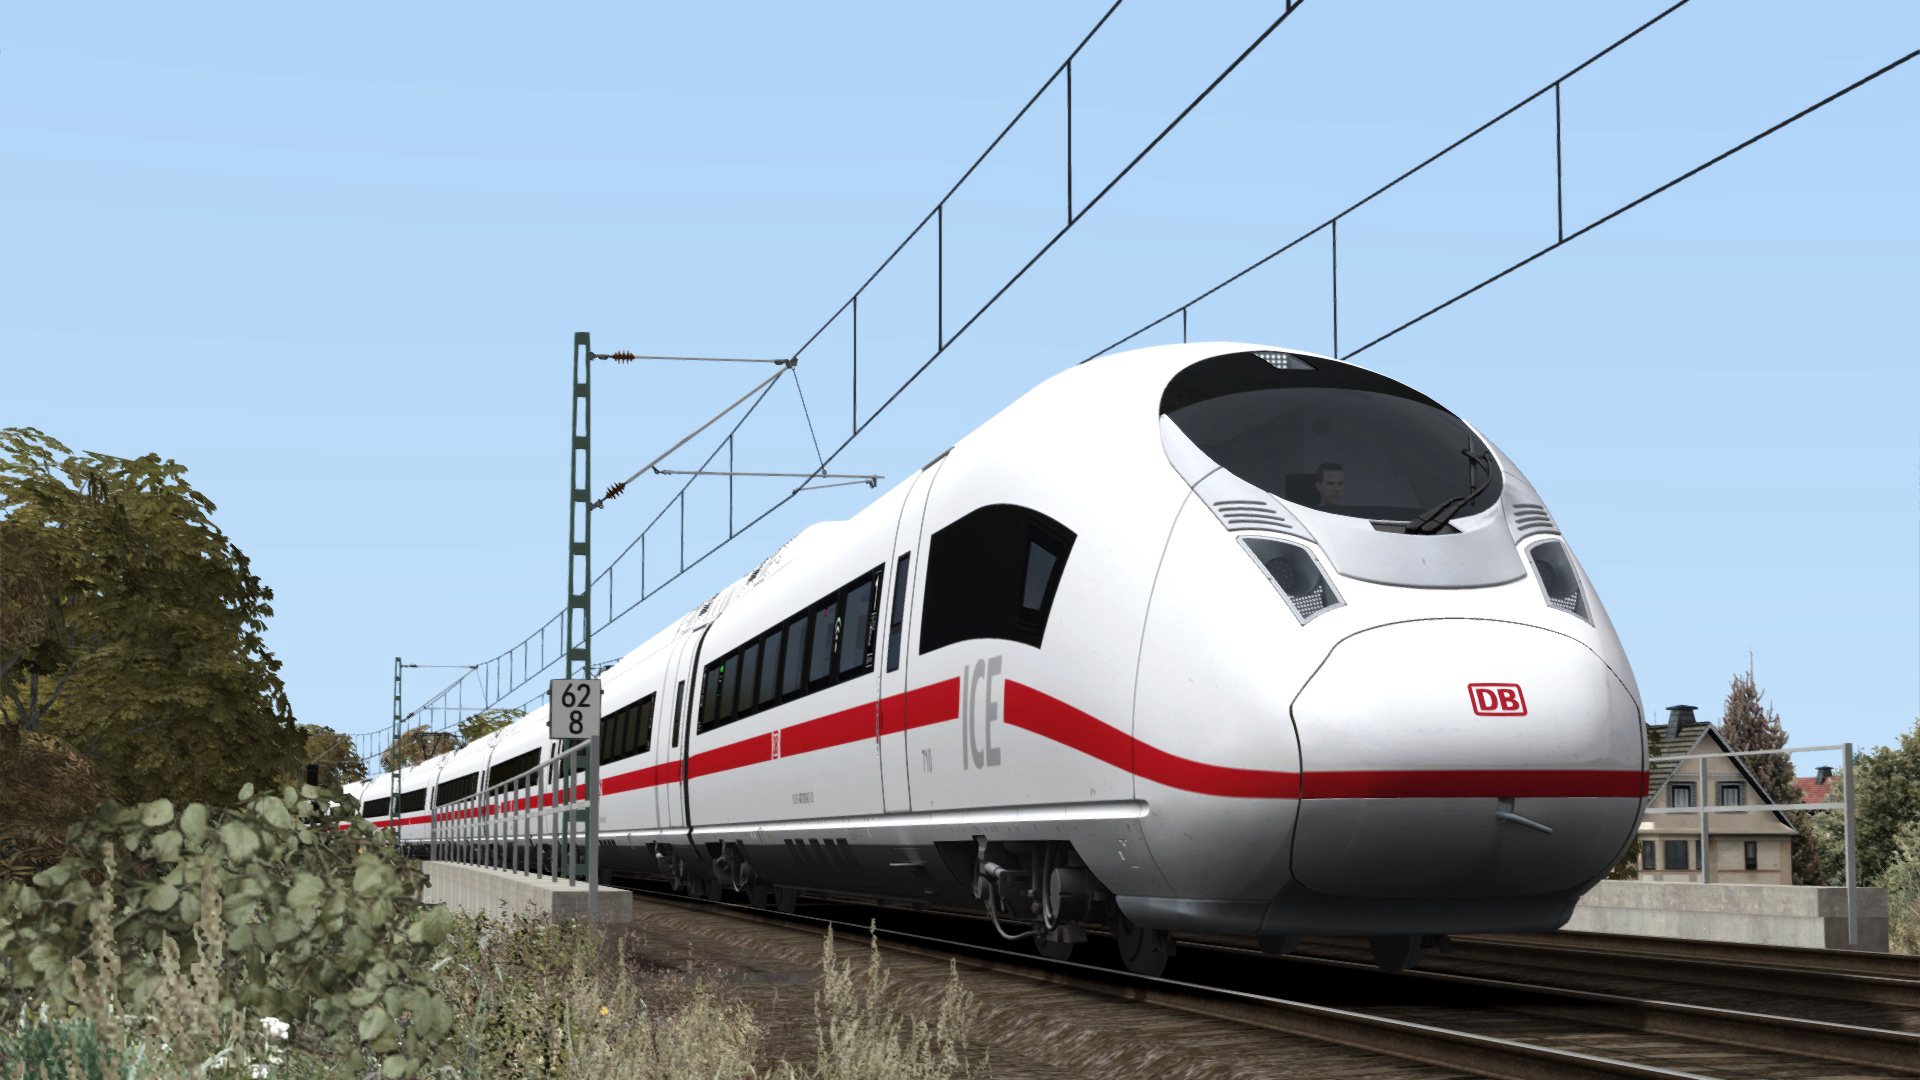 [$ 3.82] Train Simulator - DB BR 407 ‘New ICE 3’ EMU Add-On DLC Steam CD Key